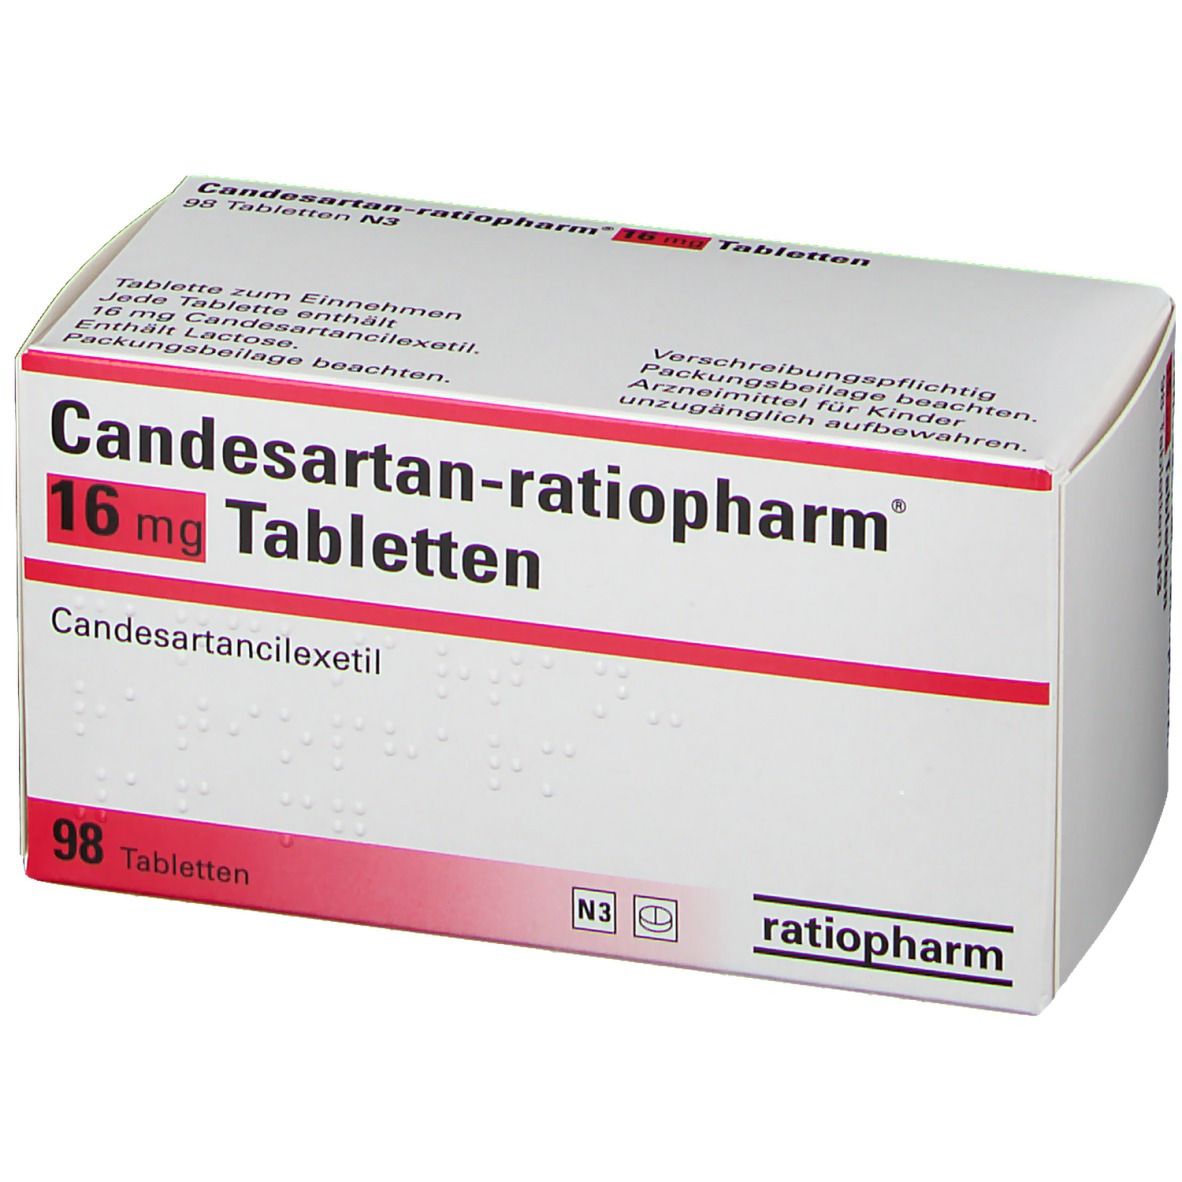 Кандесартан отзывы врачей. Кандесартан 16 мг. Кандесартан латынь. Силидерон 16 мг. Кандесартан рецепт на латинском.